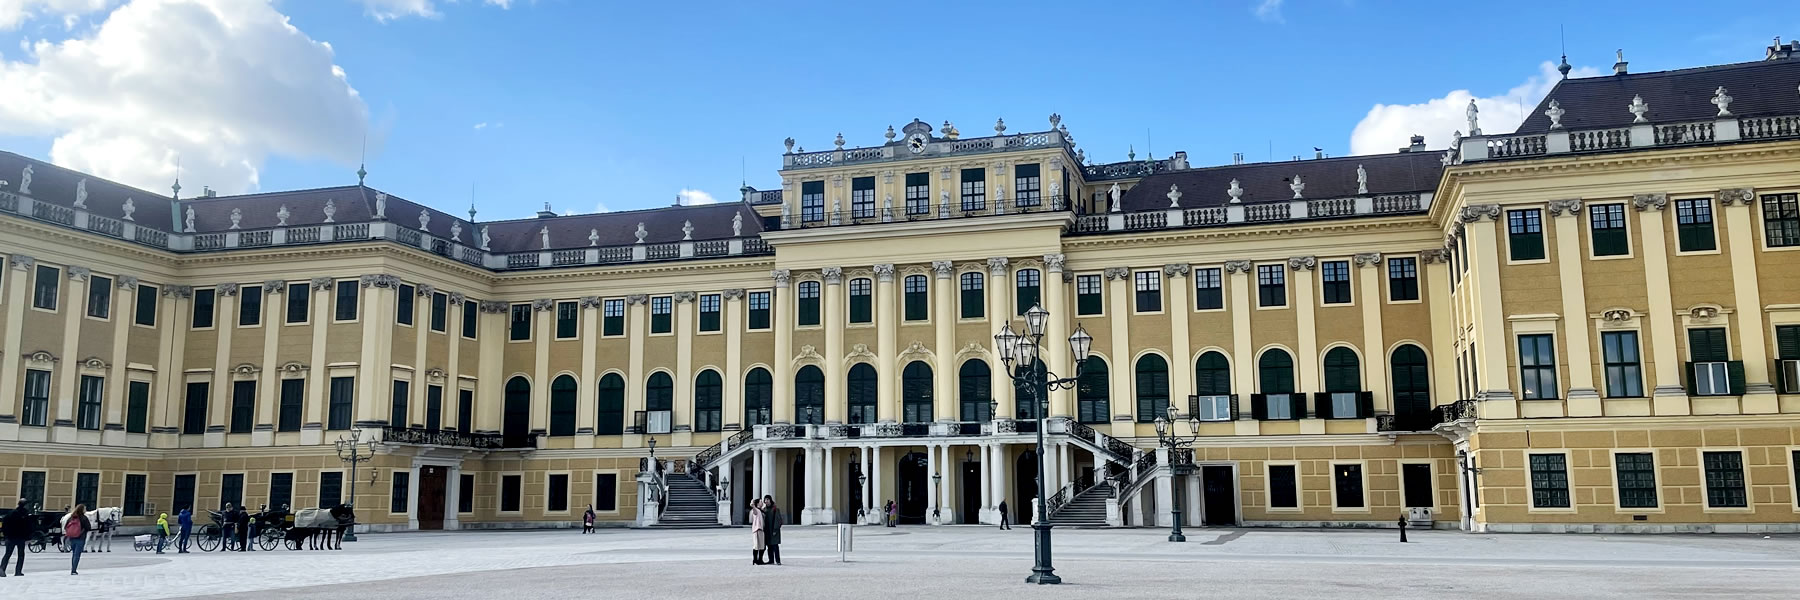 Schonbrunn Vienna: palazzo imperiale